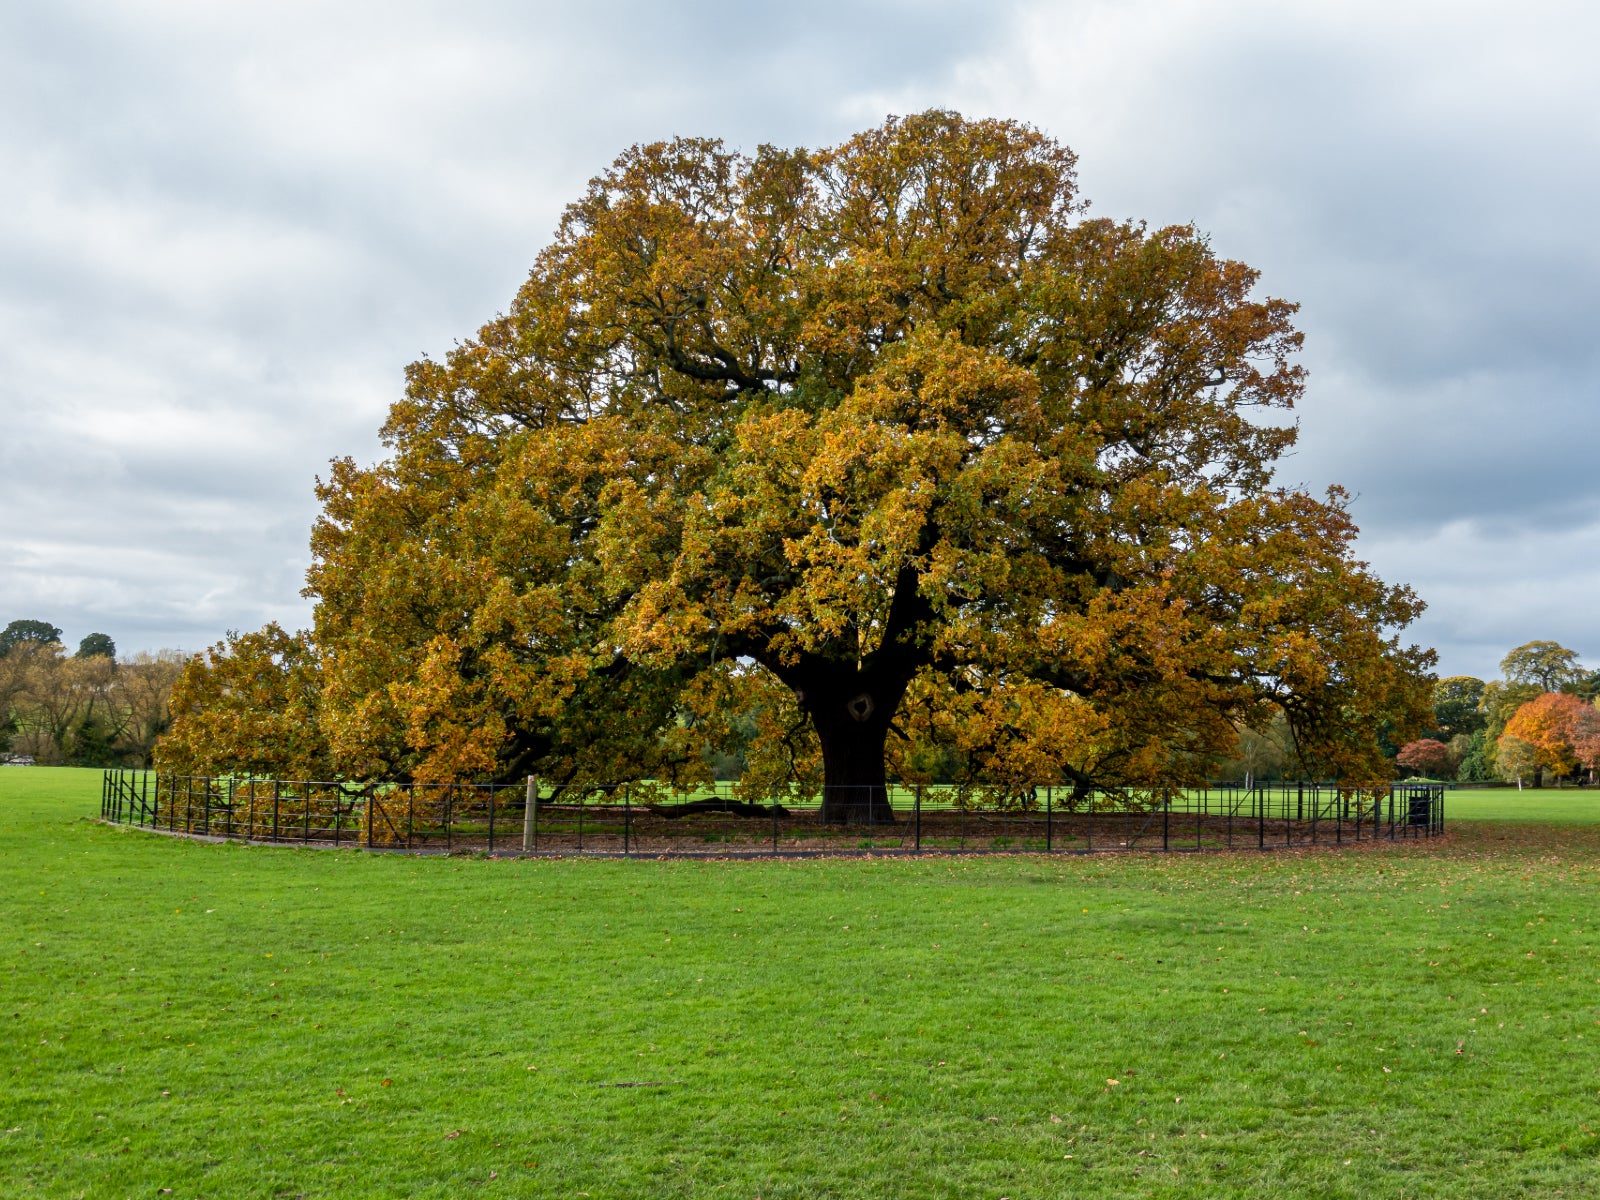 Tree oak